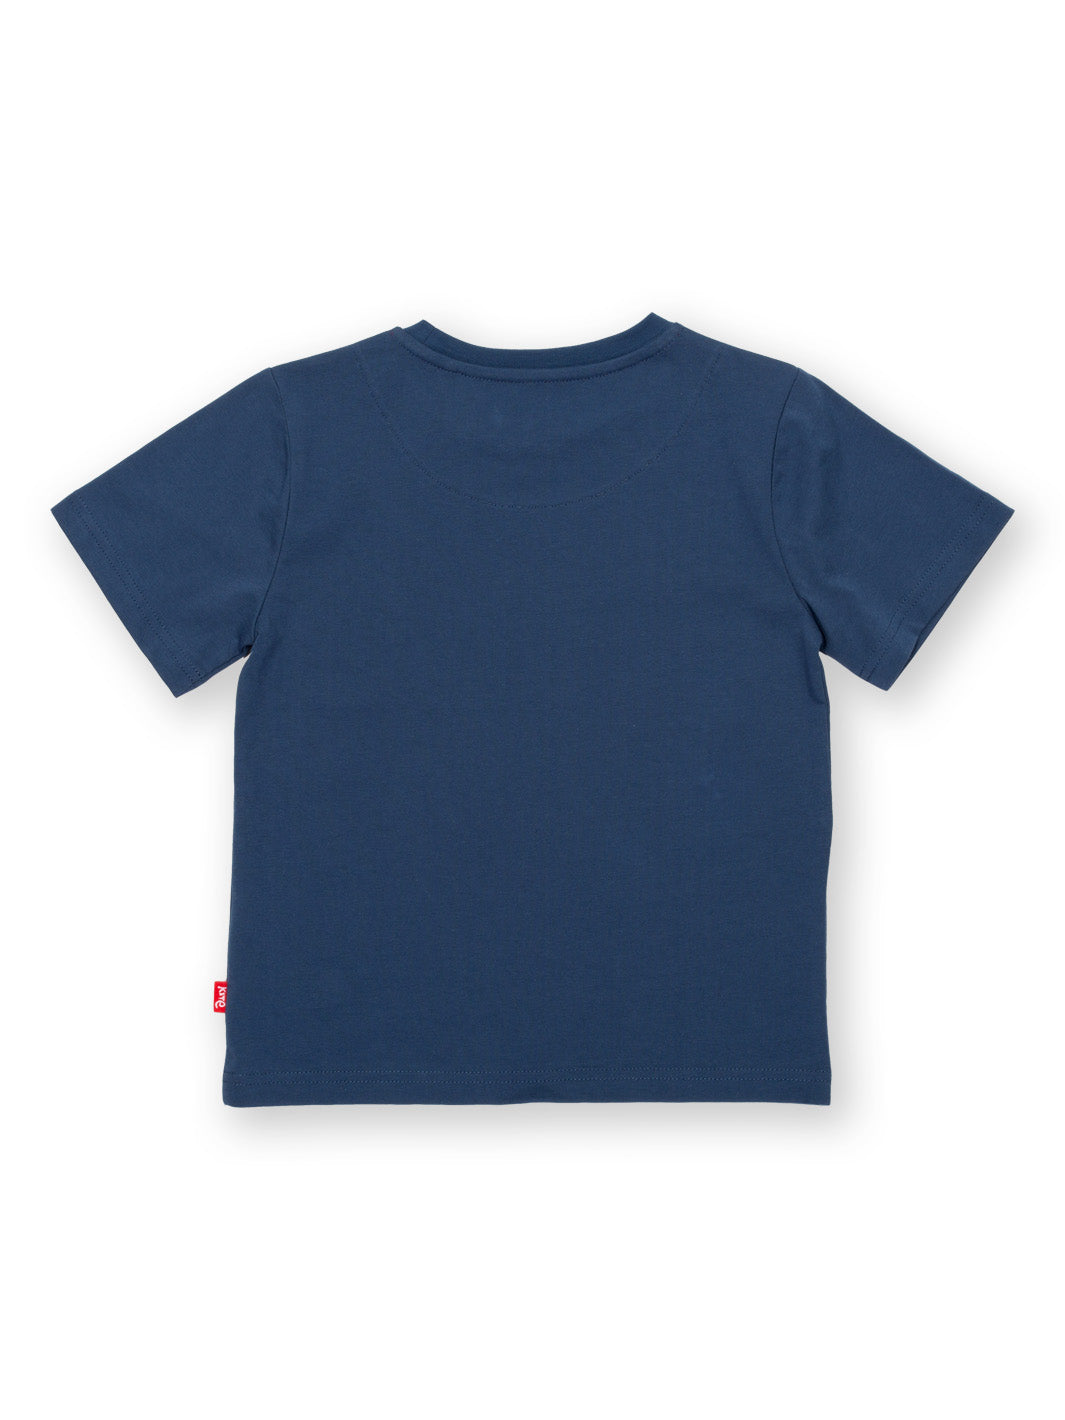 Kite - Shark T-Shirt navyblau